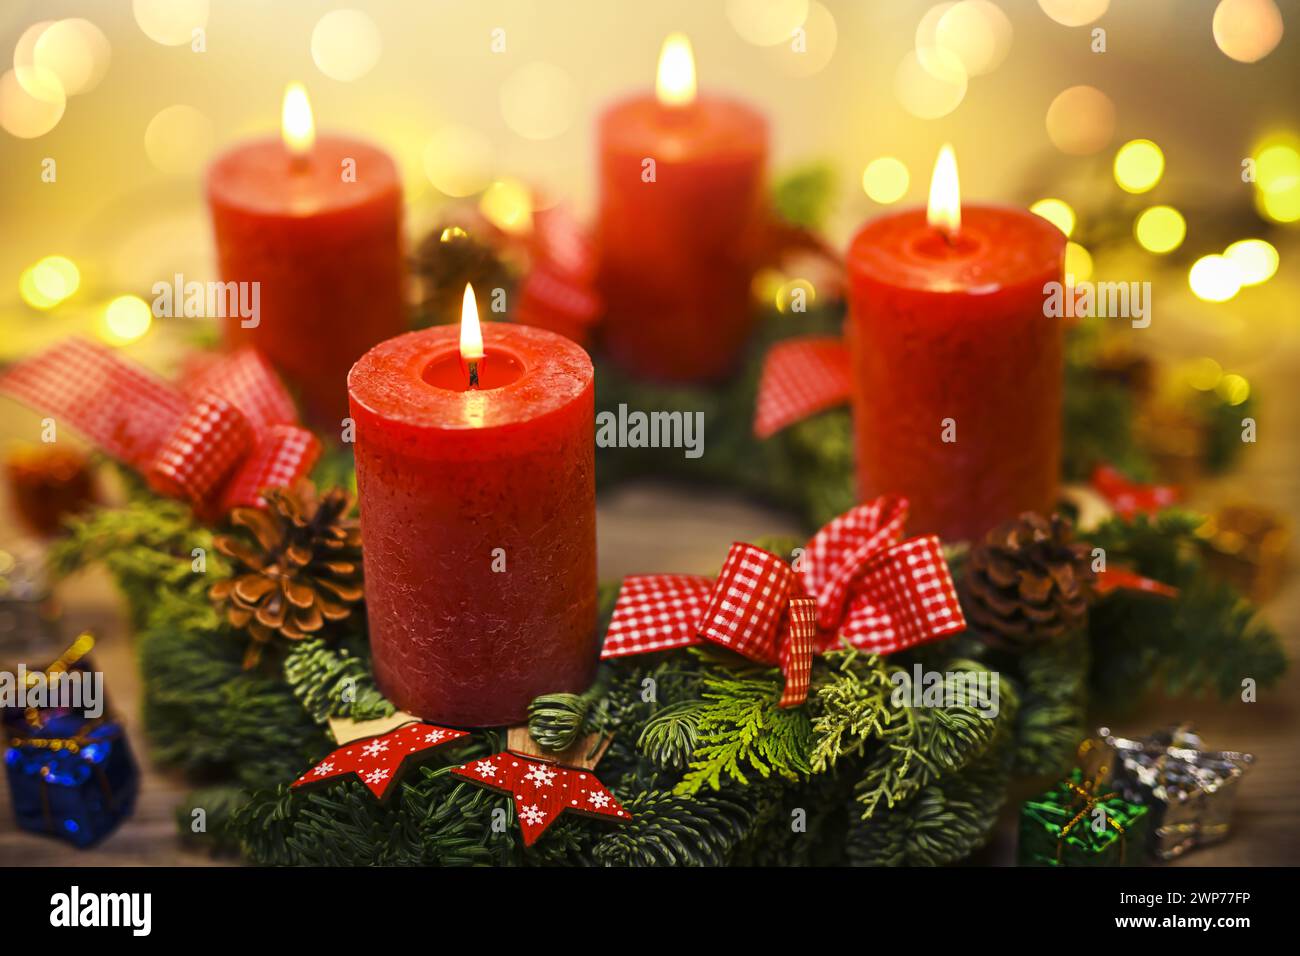 Adventskranz mit vier brennenden Kerzen Foto Stock